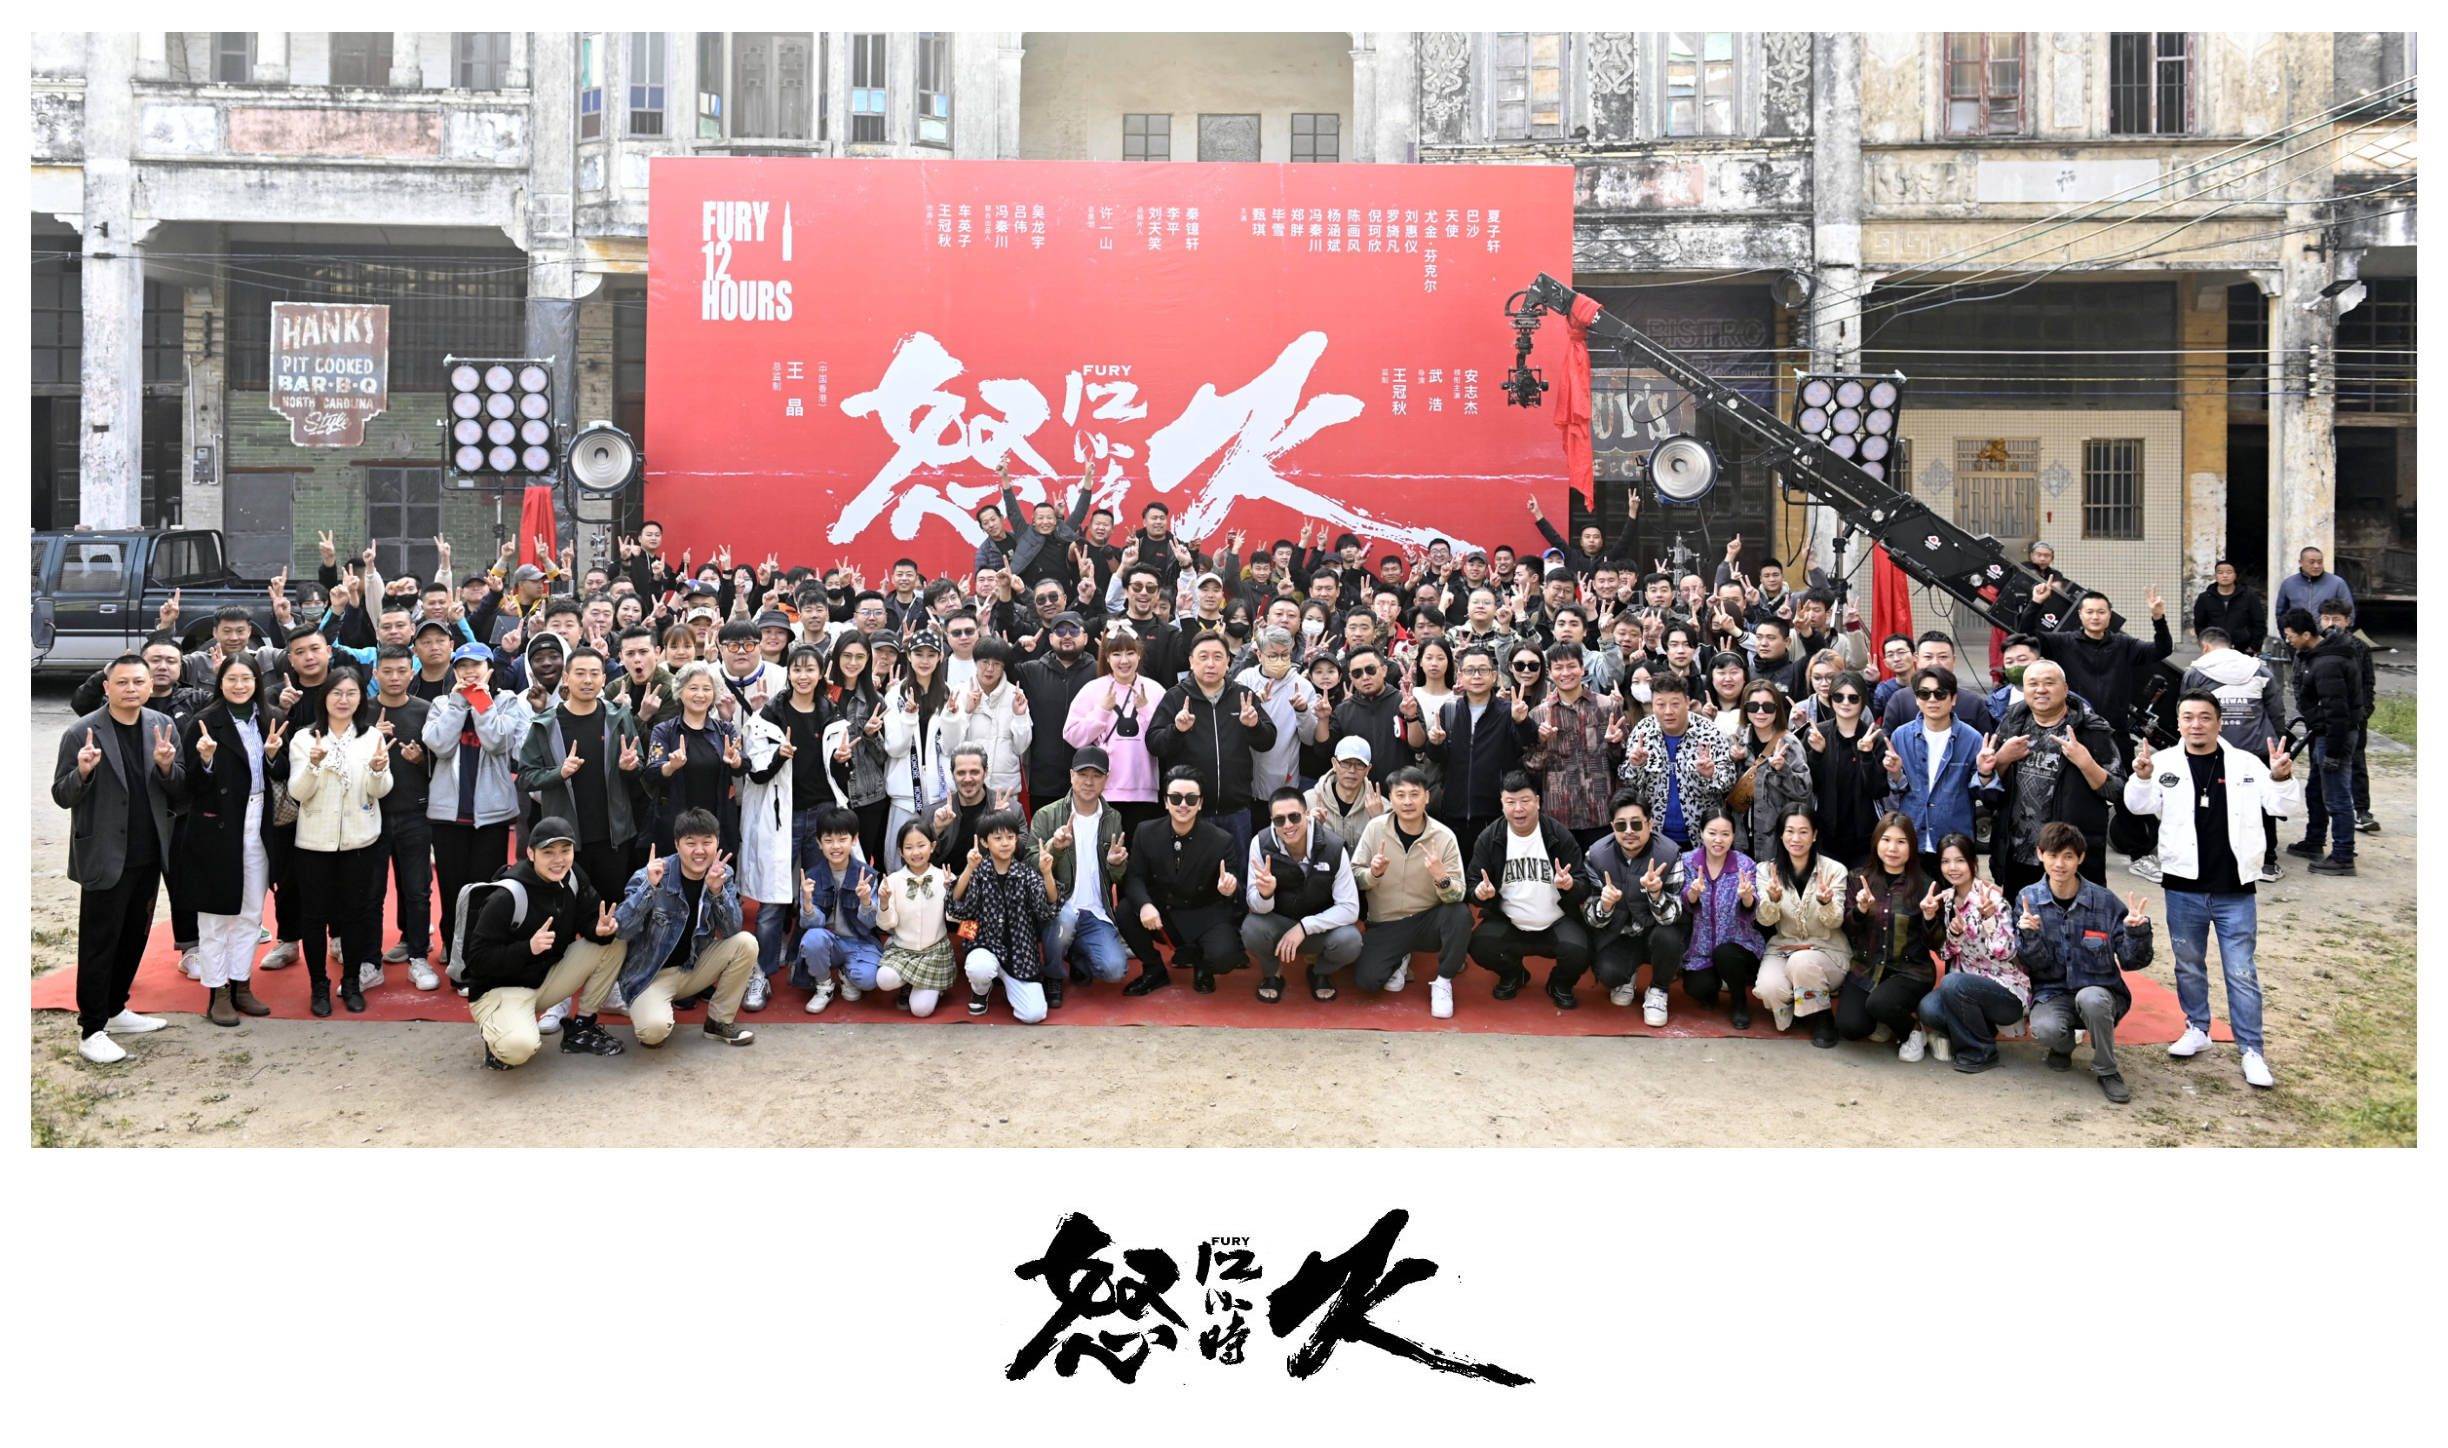 动作片《怒火12小时》被誉为“中国第一部”的影片盛大开幕